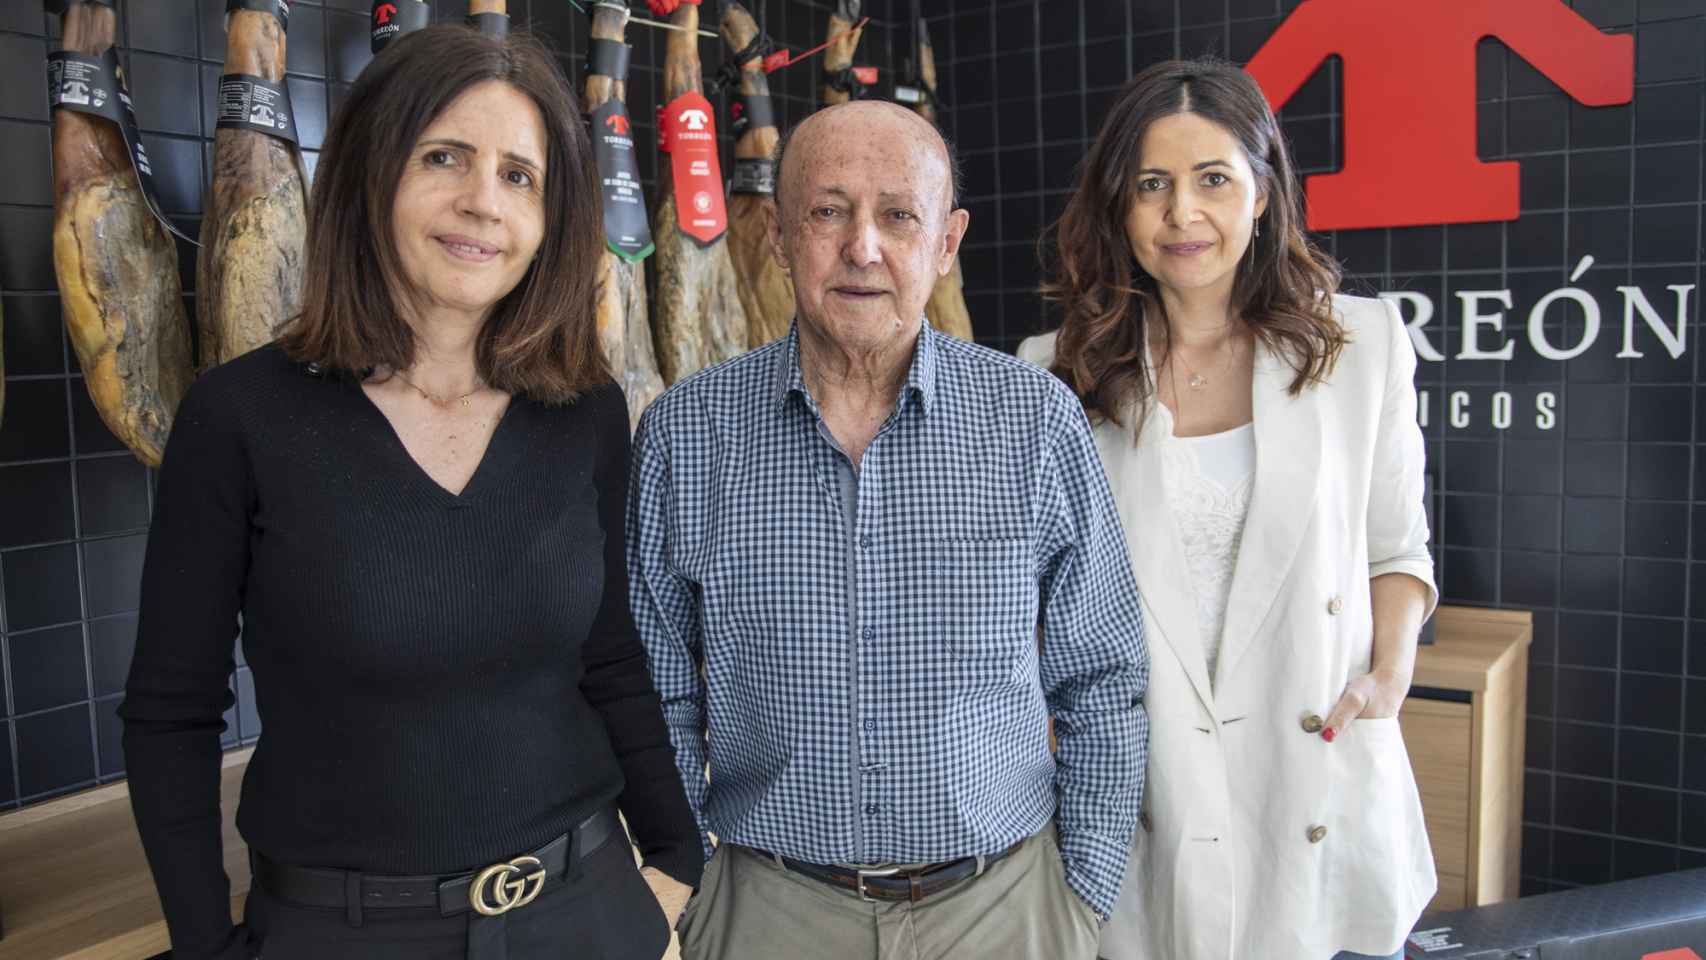 El fundador de Ibéricos Torreón Generoso García, en el centro, junto a sus dos hijas: Chus (izquierda) y Laura (derecha).